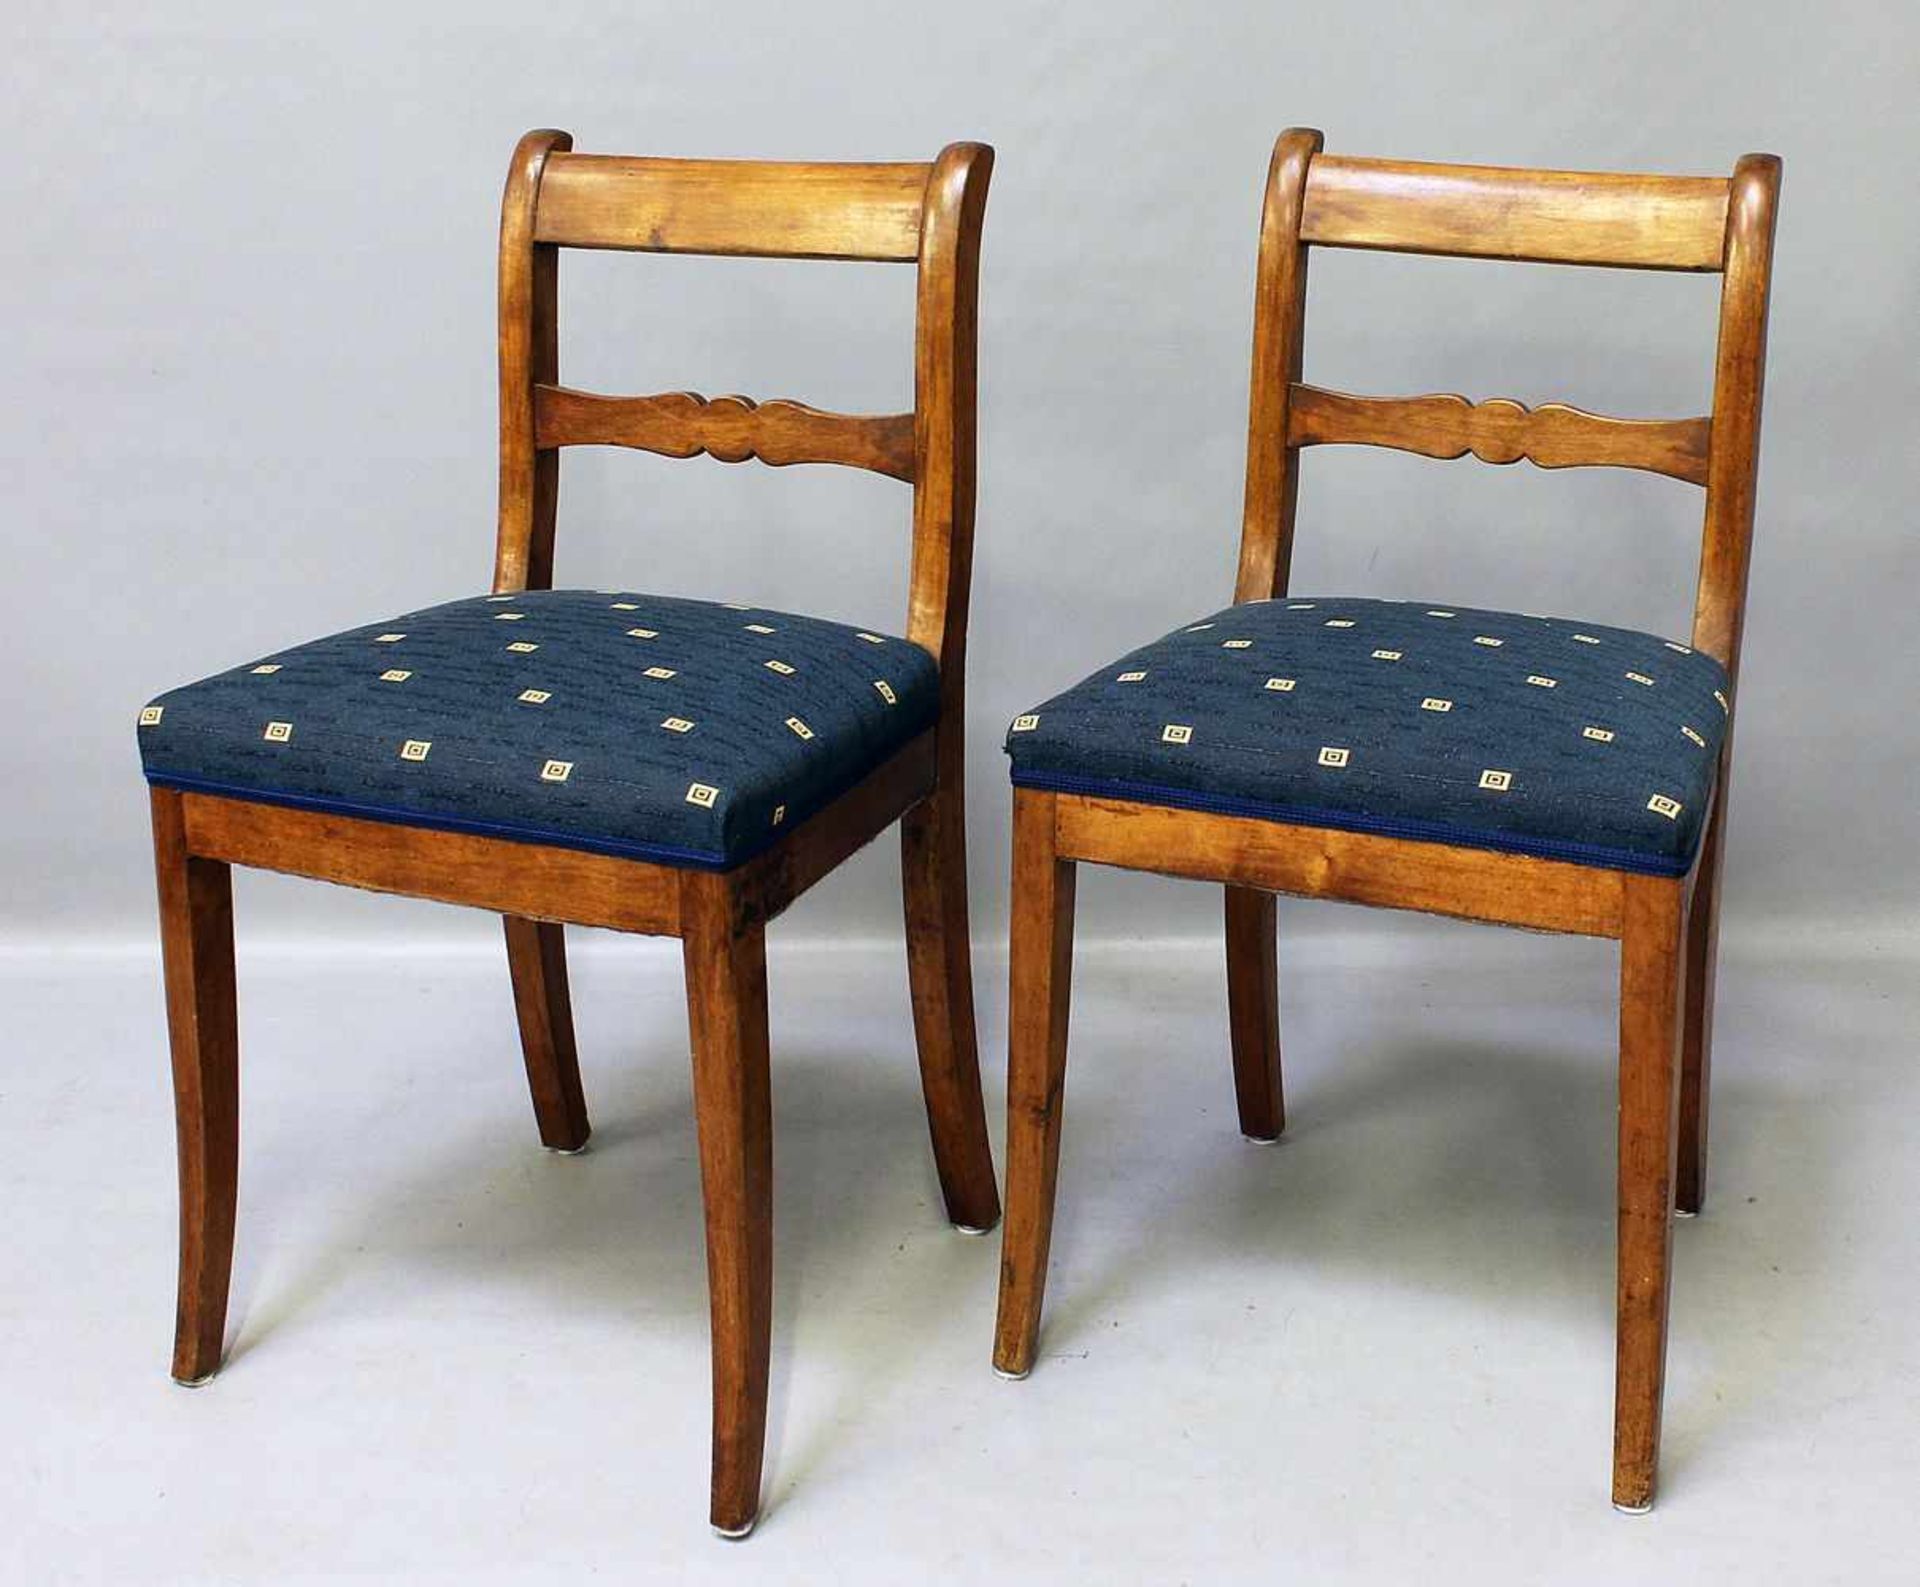 Paar Biedermeier-Stühle.Schlichte Formgebung. Holz, Sitzpolster mit Textilbezug. Alters- und